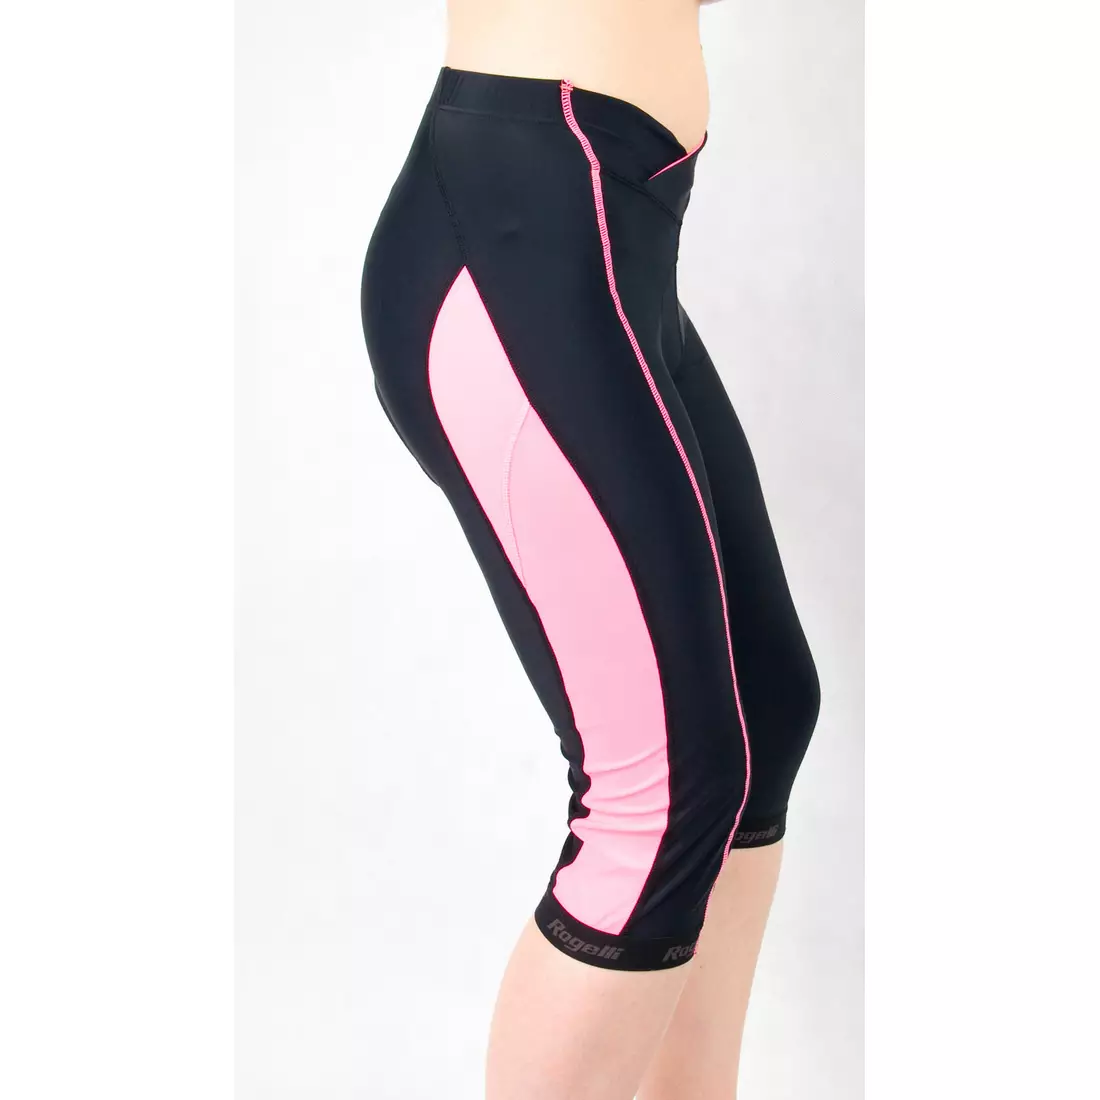 ROGELLI BYLA - 3/4-es női kerékpáros rövidnadrág, színe: fekete és rózsaszín